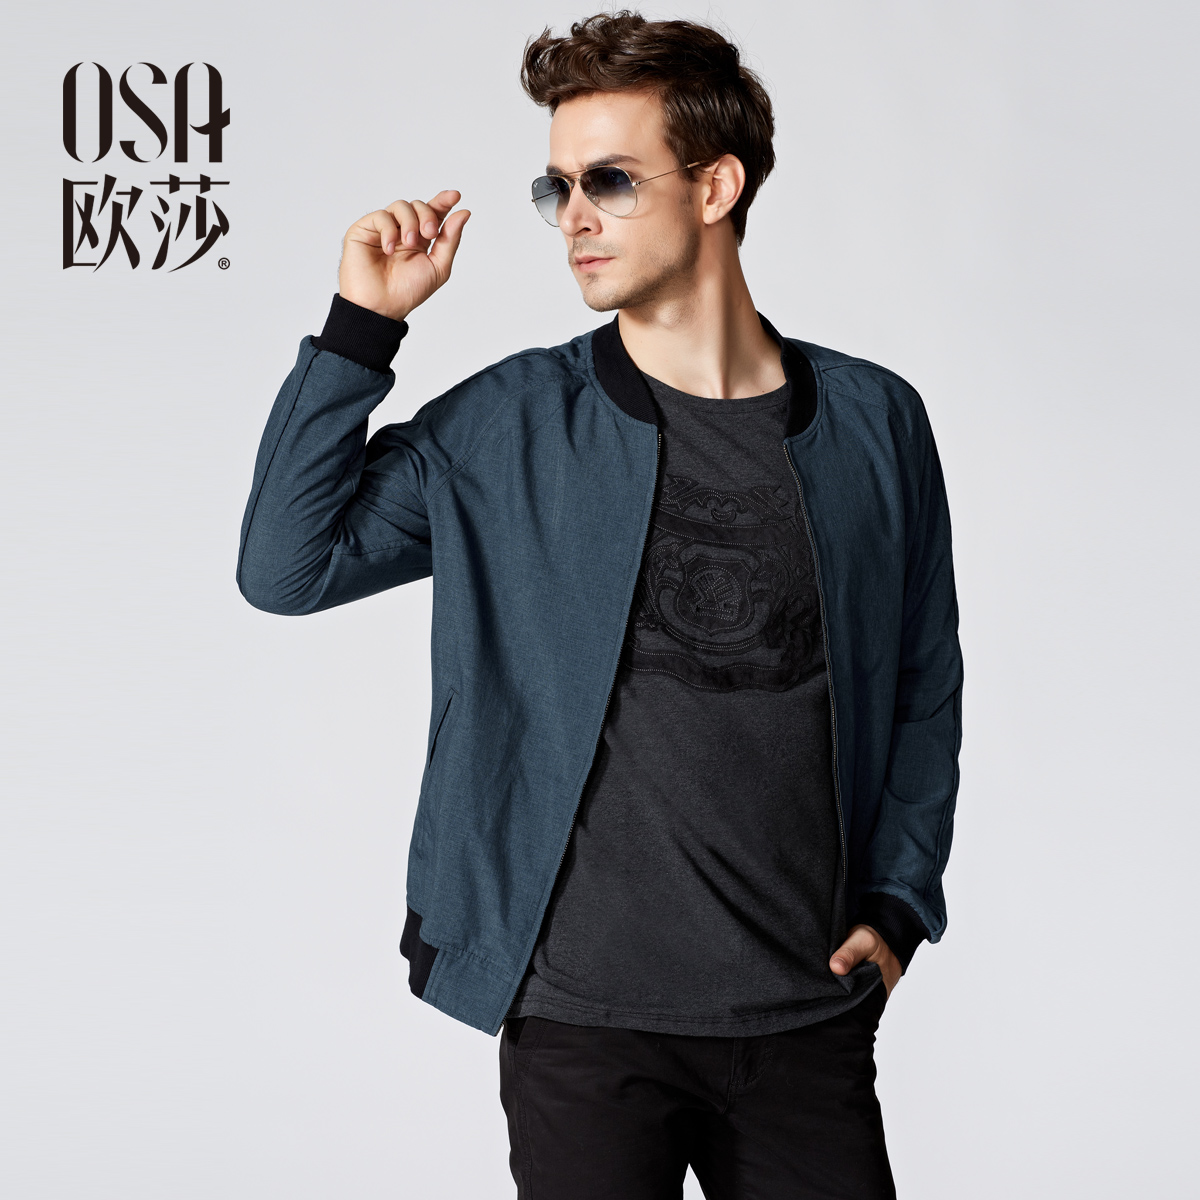 OSA欧莎2014春装新款男装上衣修身男士休闲夹克外套 MW410007